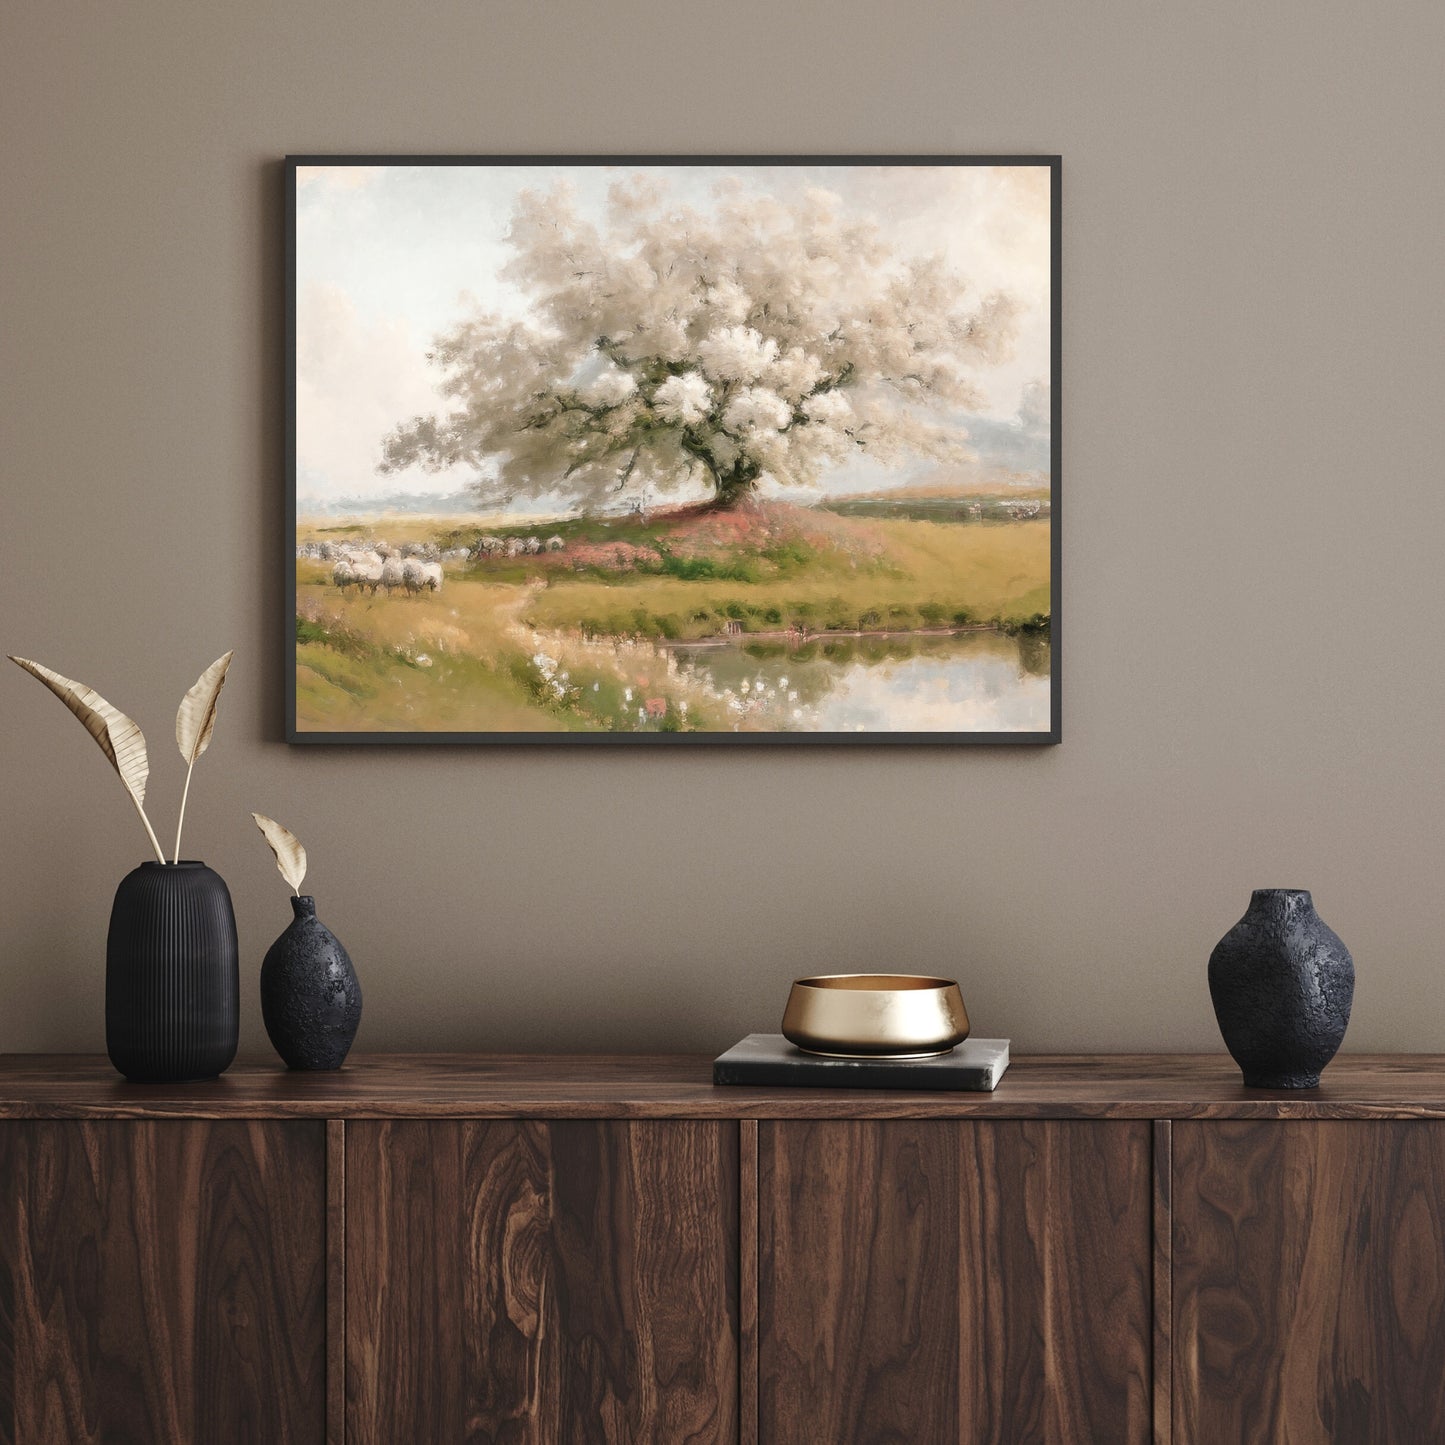 Kirschblütenbaum in Wildblumenwiese, Papierposter, Drucke, Wandkunst im Vintage-Stil mit Schafherde und sanften Pastellfarben, Natur-Heimdekoration